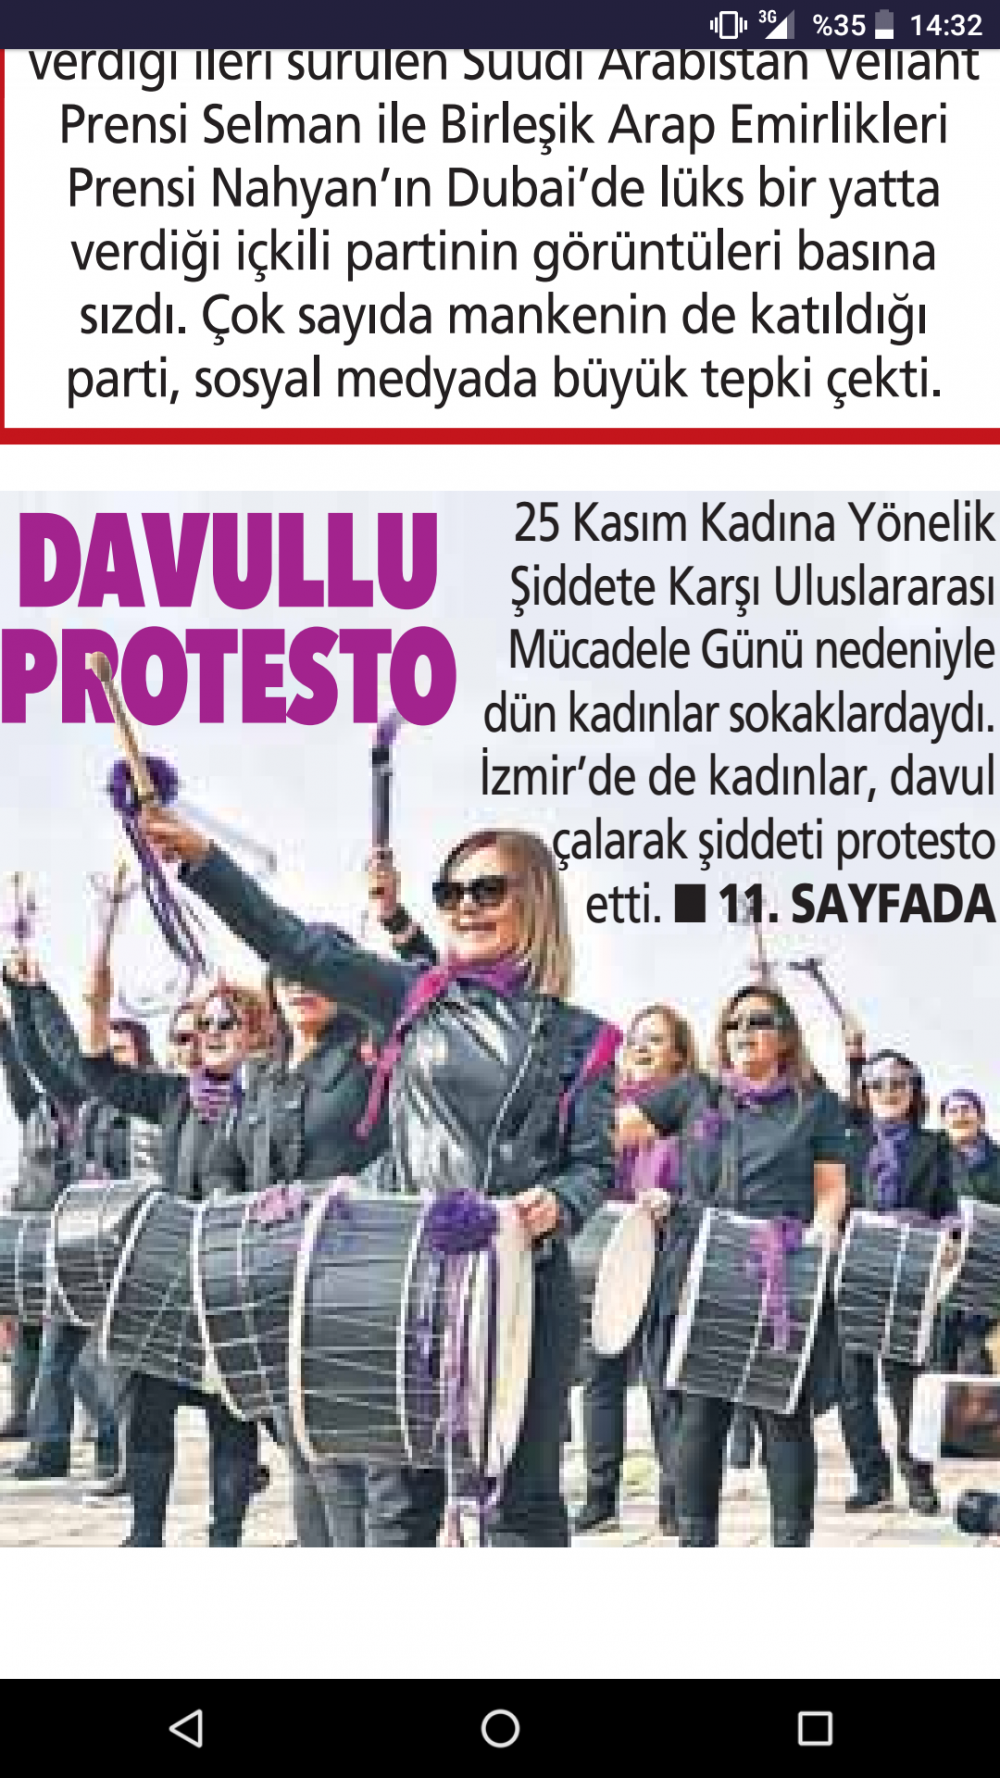 Kadına yönelik şiddeti protesto etmek amacıyla kadınlar davullarla sokağa çıktı.